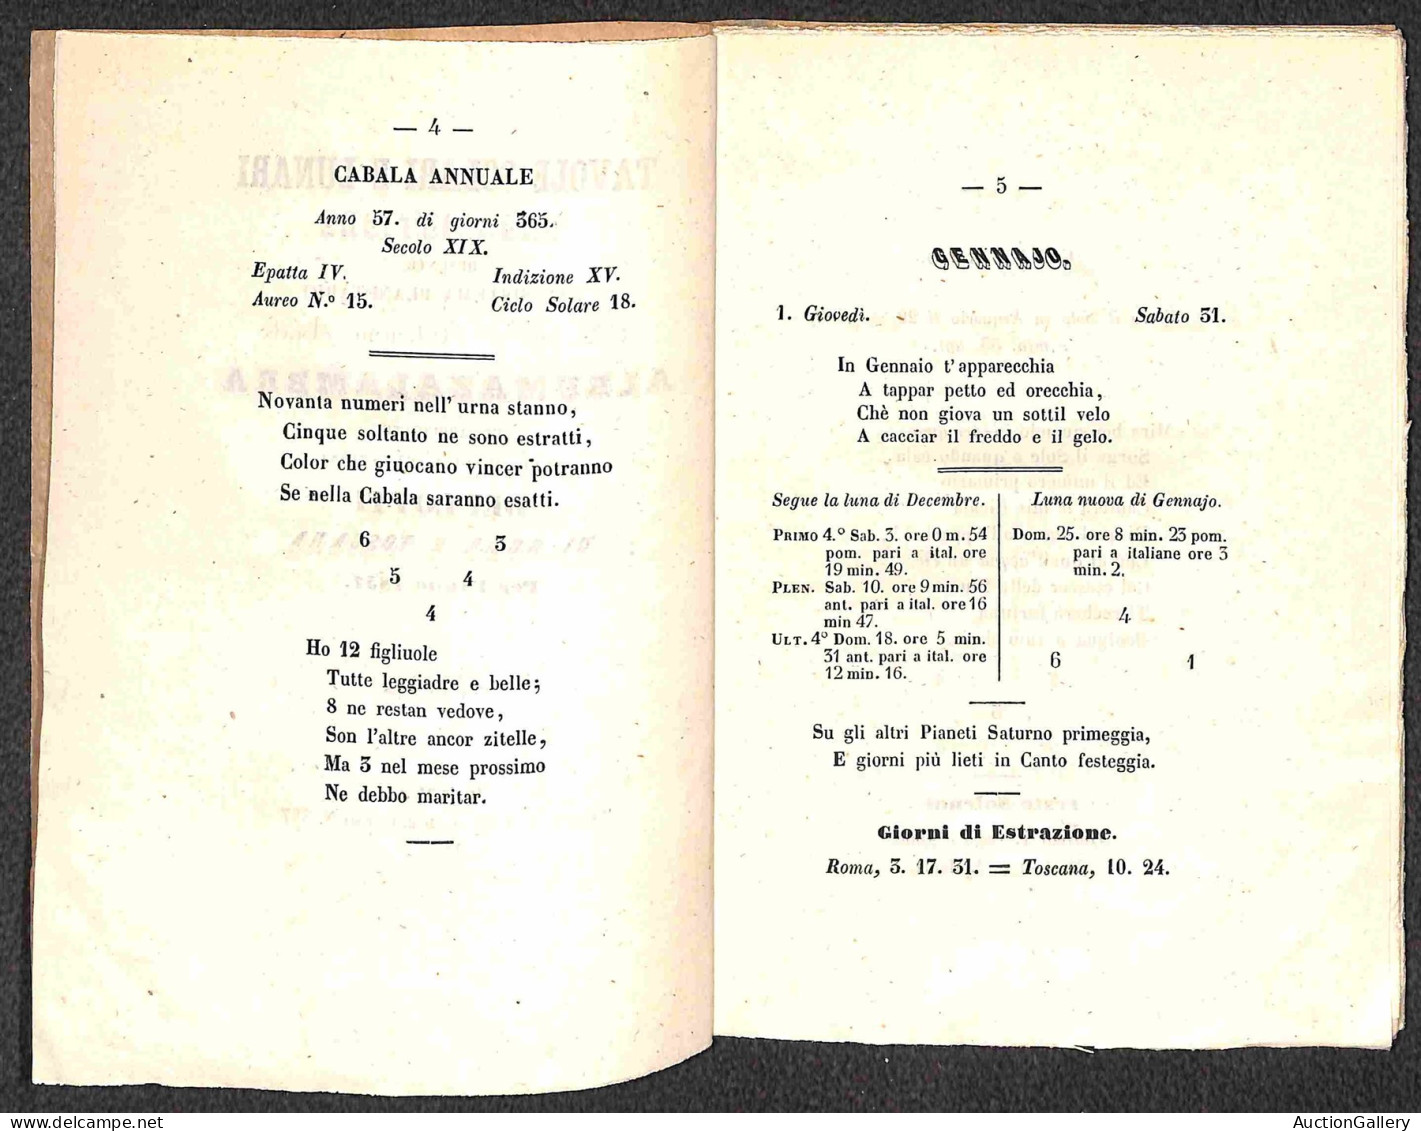 DOCUMENTI/VARIE - 1857 - Cabola Del Giuoco Del Lotto Dell'arabo Astronomo Albumazalambra - Opuscolo Di 32 Pagine Rilegat - Autres & Non Classés